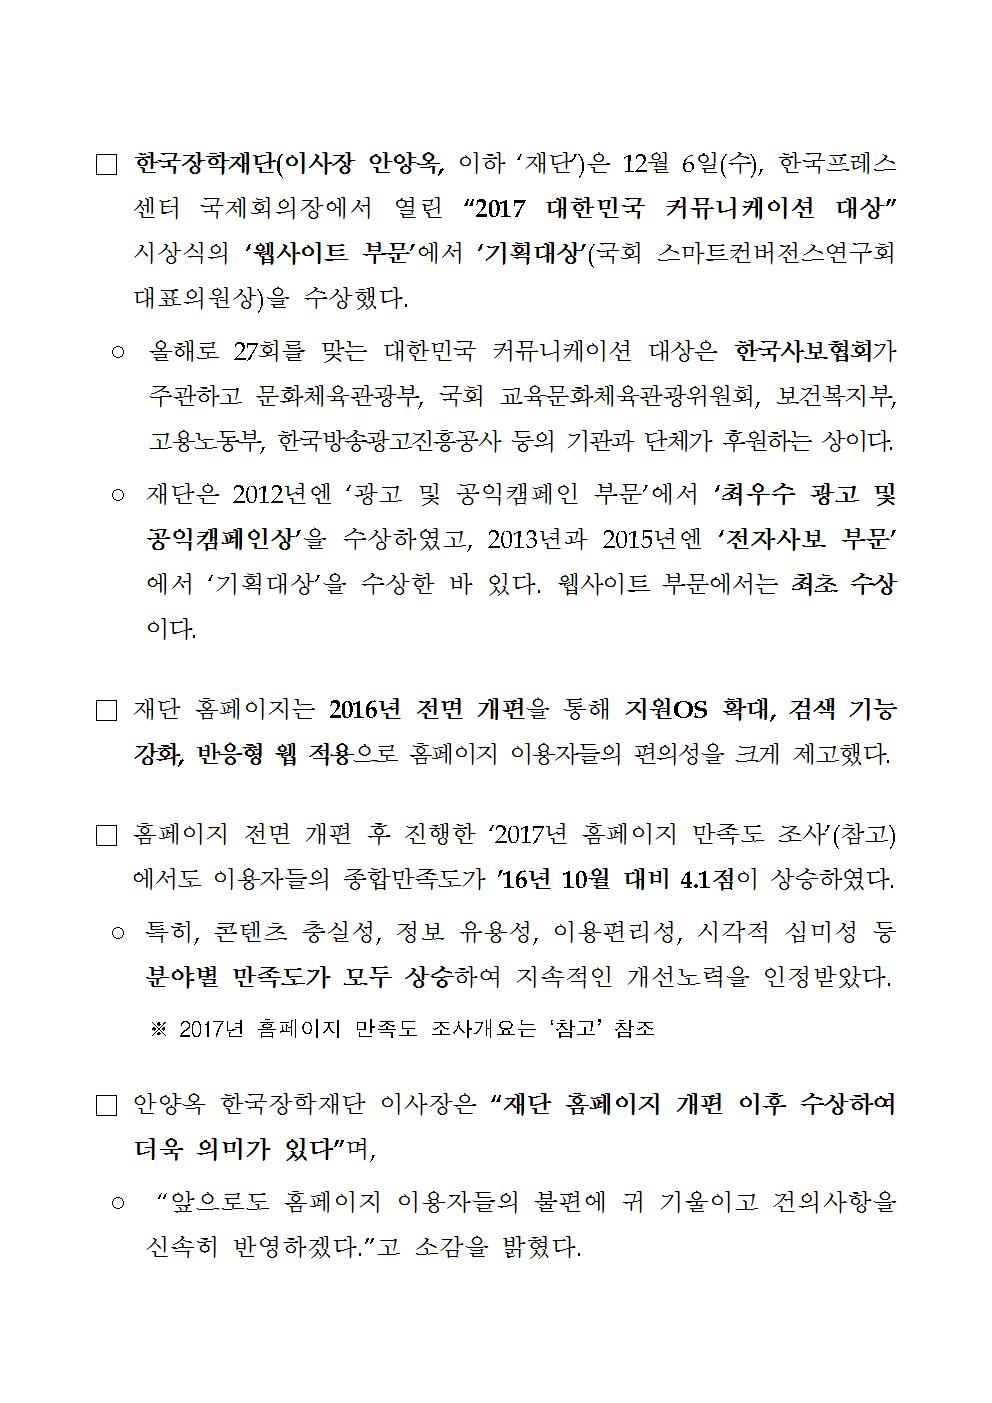 12-07(목)[보도자료] 한국장학재단, 2017년 대한민국 커뮤니케이션 대상 수상002.jpg